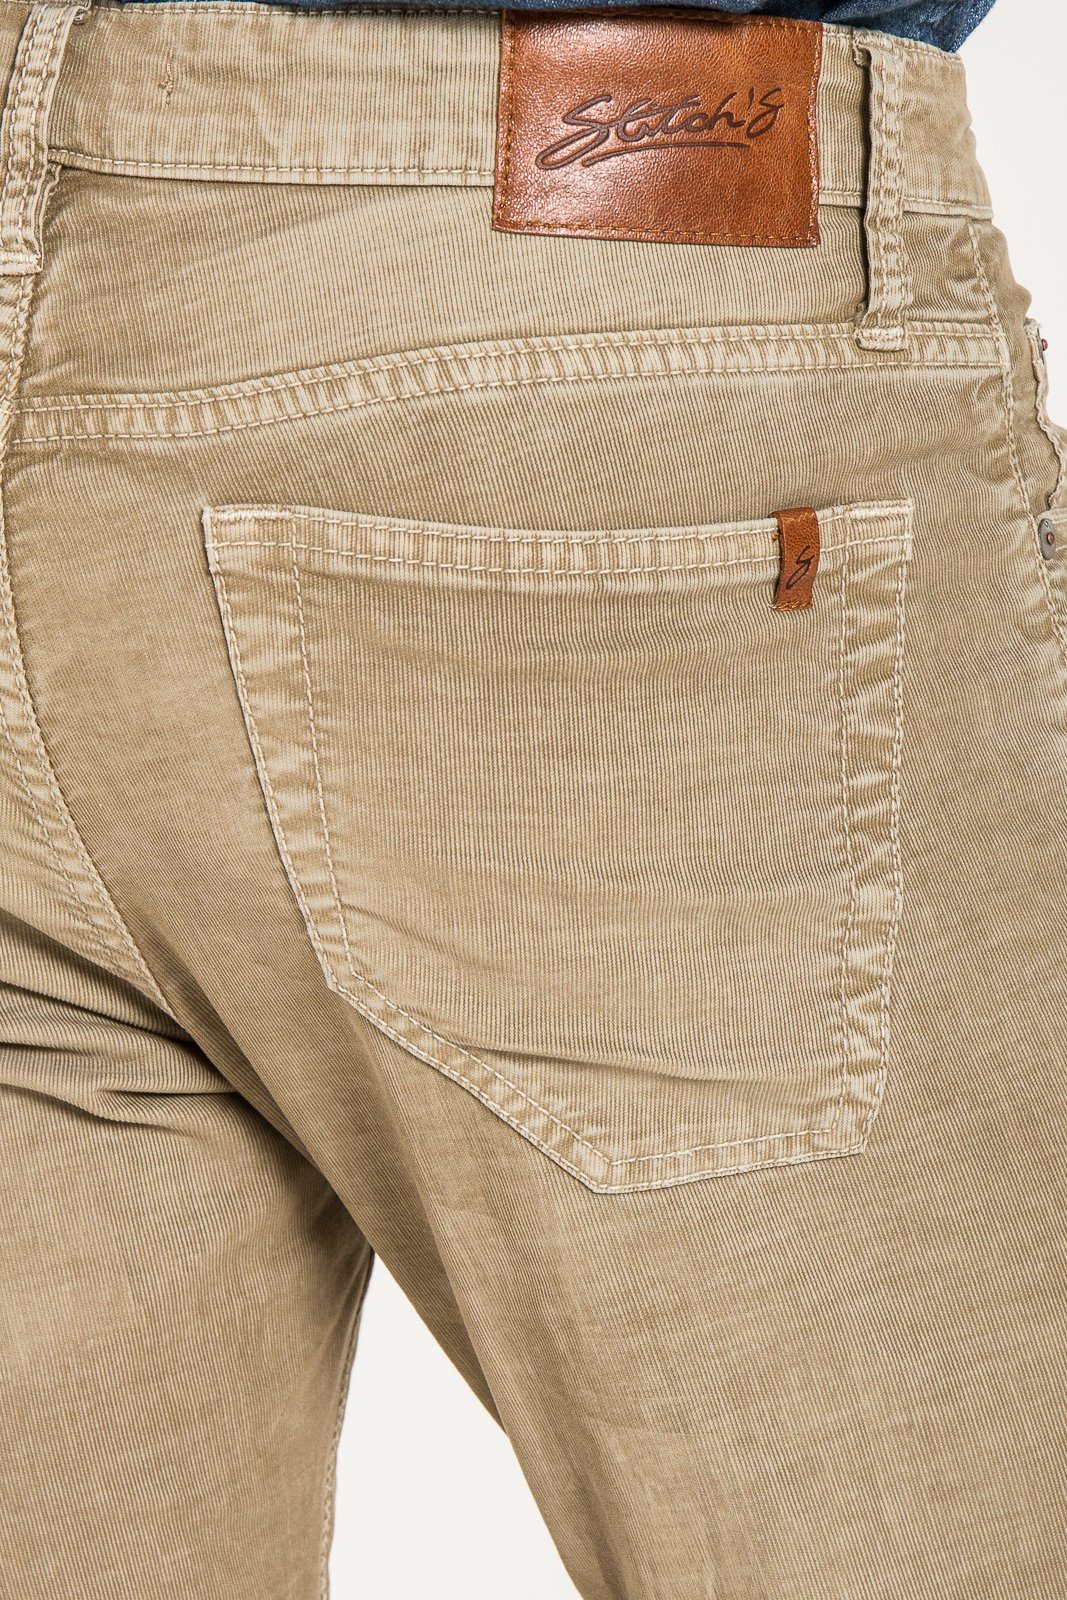 BARFLY SLIM IN STITCHS Jeans | CORDUROY Stitch\'s MERINO – JEANS JEANS